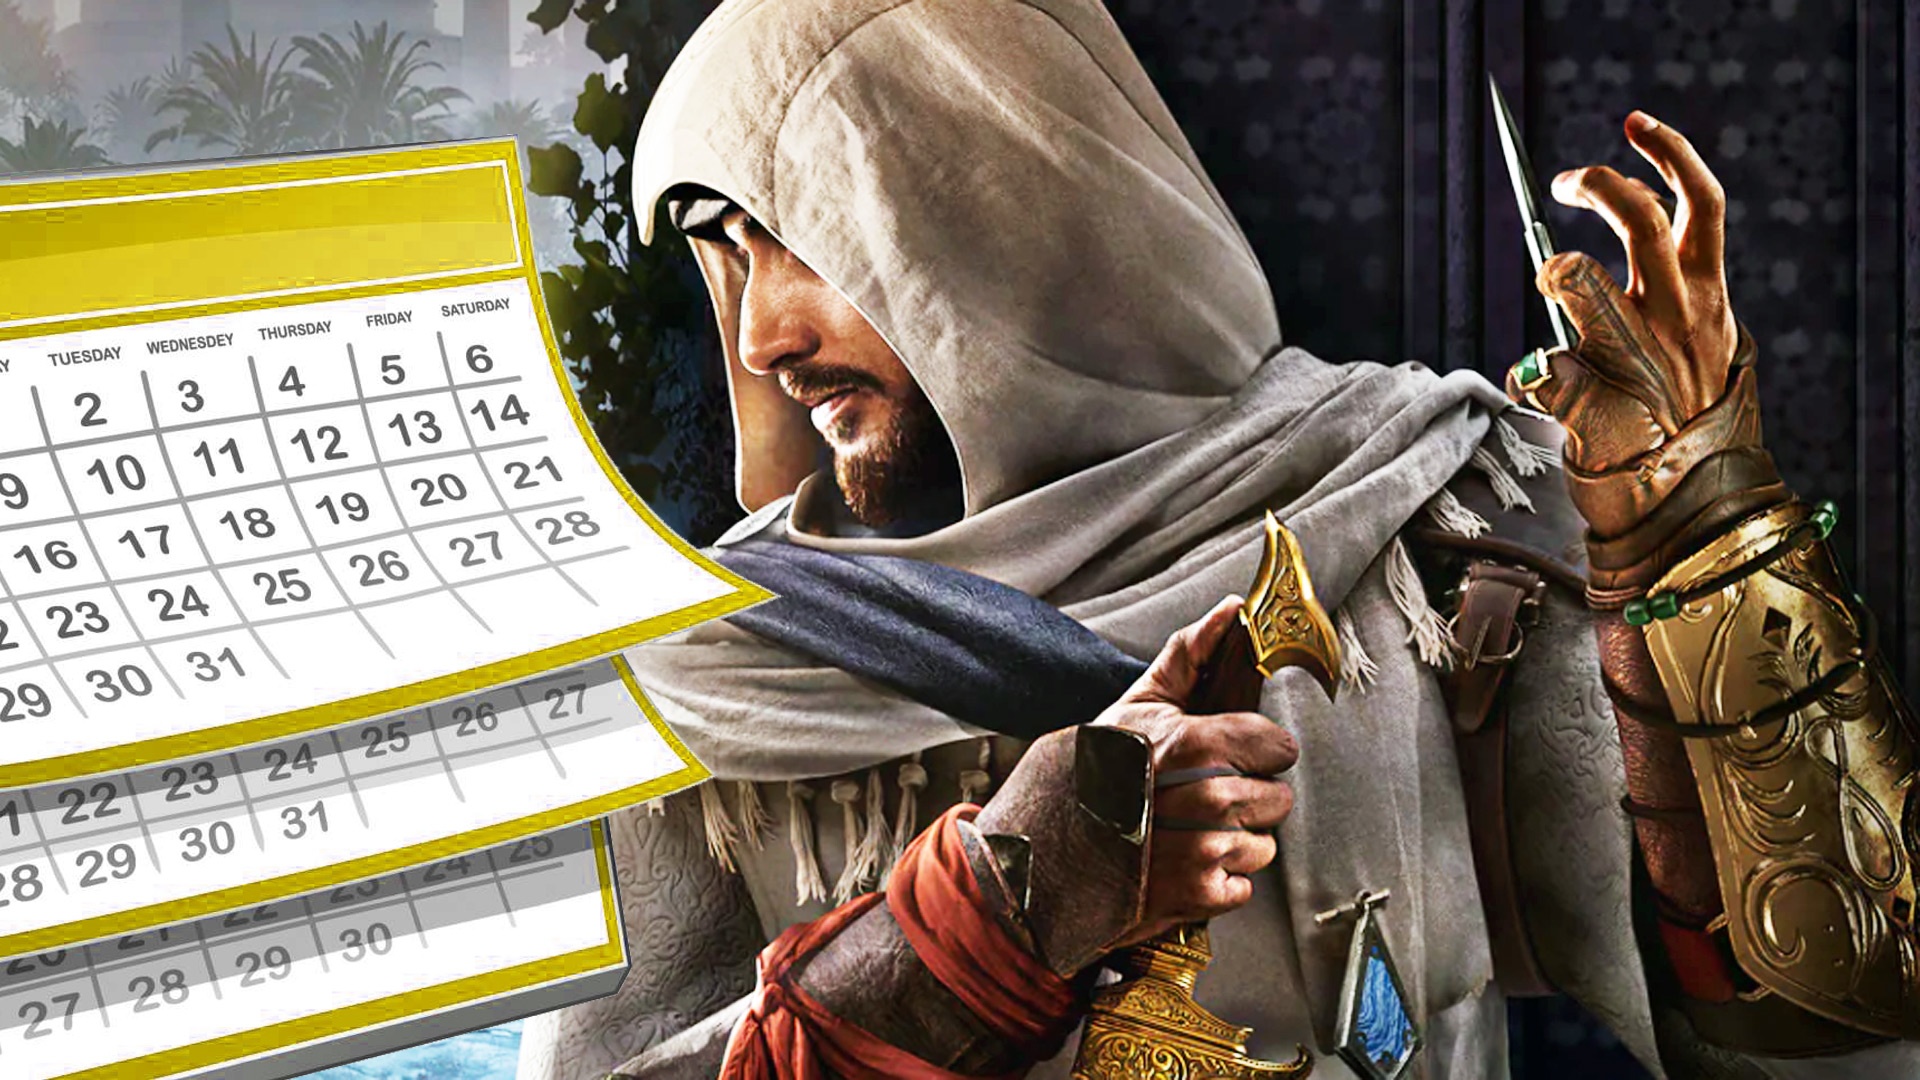 #Assassin’s Creed Mirage erscheint im August 2023, zumindest laut diesem GameStop-Leak